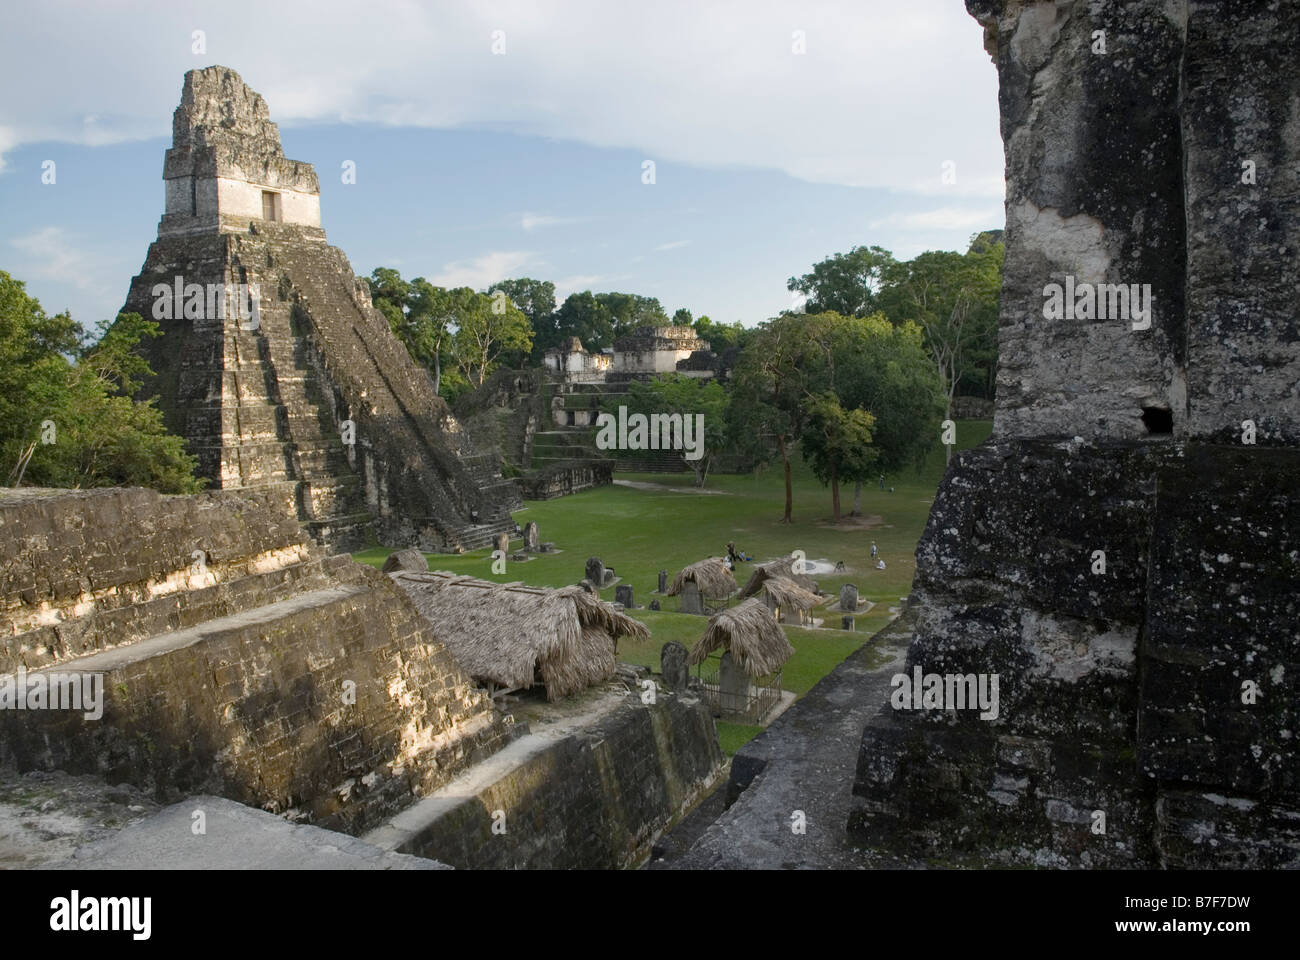 Anzeigen des Tempels, ich und die "Grand Plaza" von der Akropolis del Norte. Tikal in Guatemala. Stockfoto